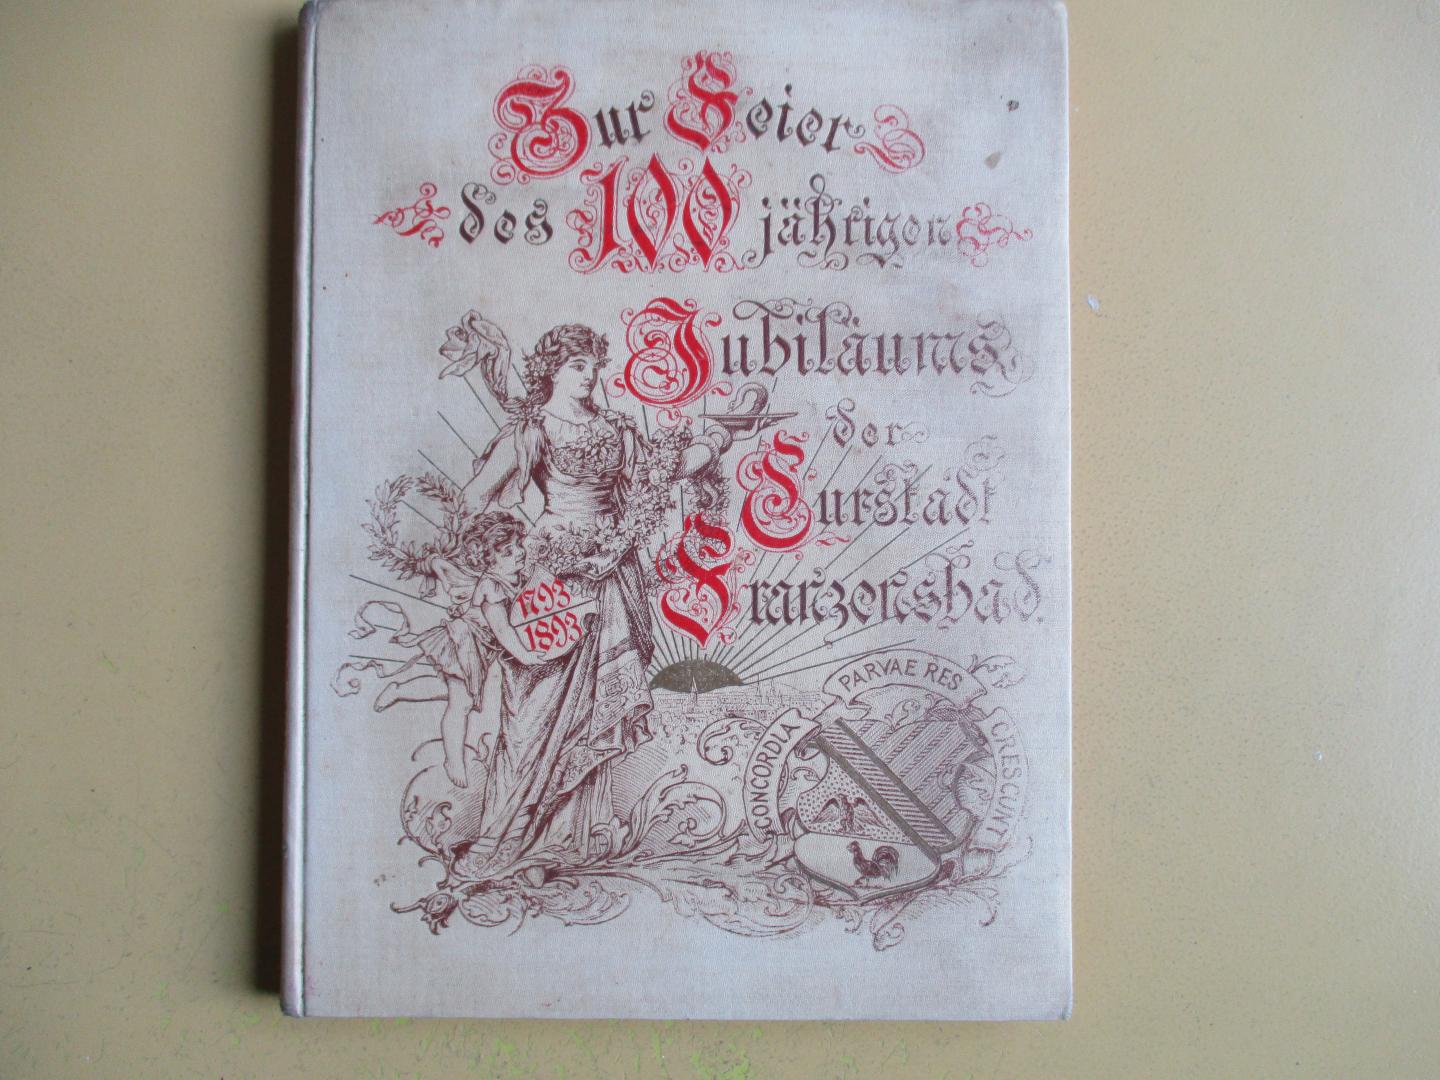 Khittl., Ferd. (Der Bürgermeister) Vorwort - Zur Feier des 100 Jährigen Jubiläums von Kaiser Franzensbad  1793 - 1893